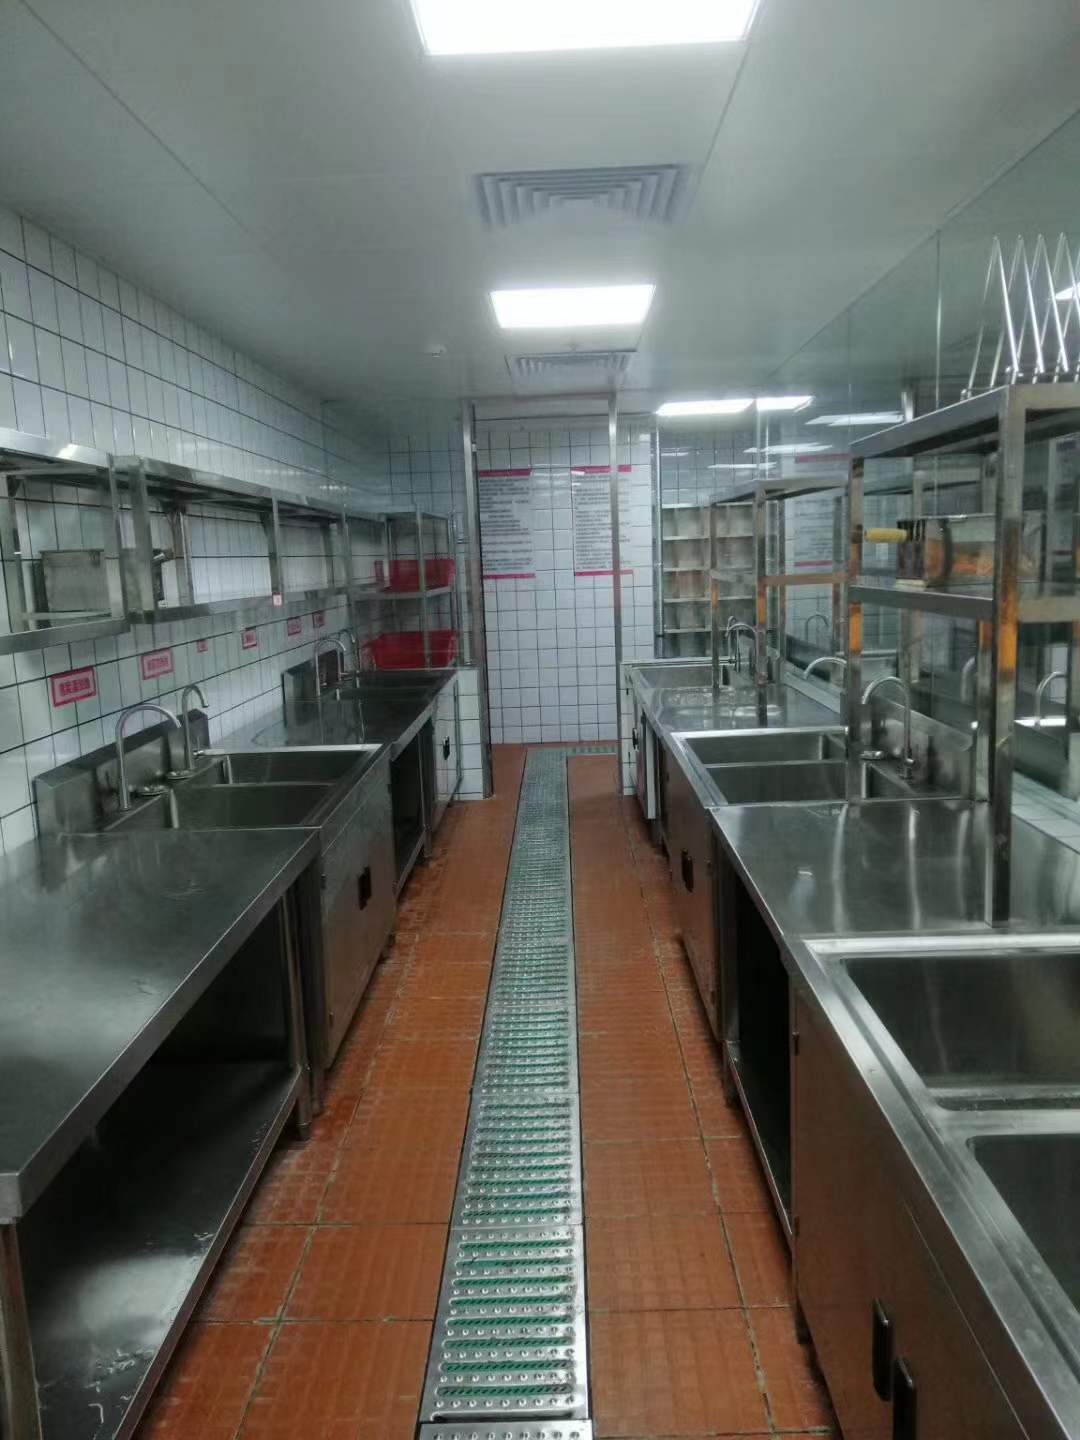 310人食堂厨具设备工程设计需要怎么配置洗碗机和备餐工作台以及价格